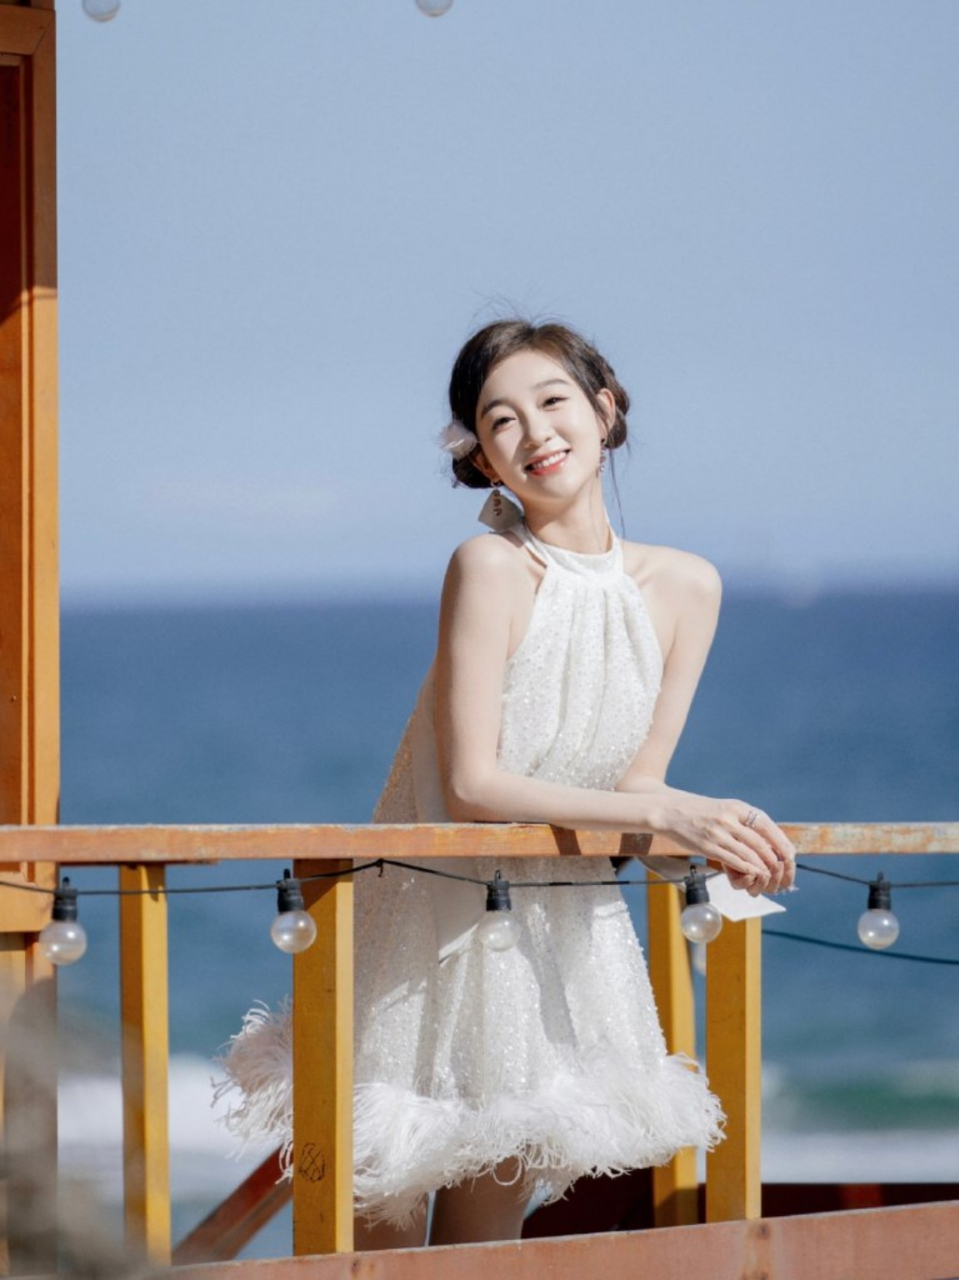 李子璇白色连衣裙写真,皮肤白皙笑容甜美,越看越诱人!